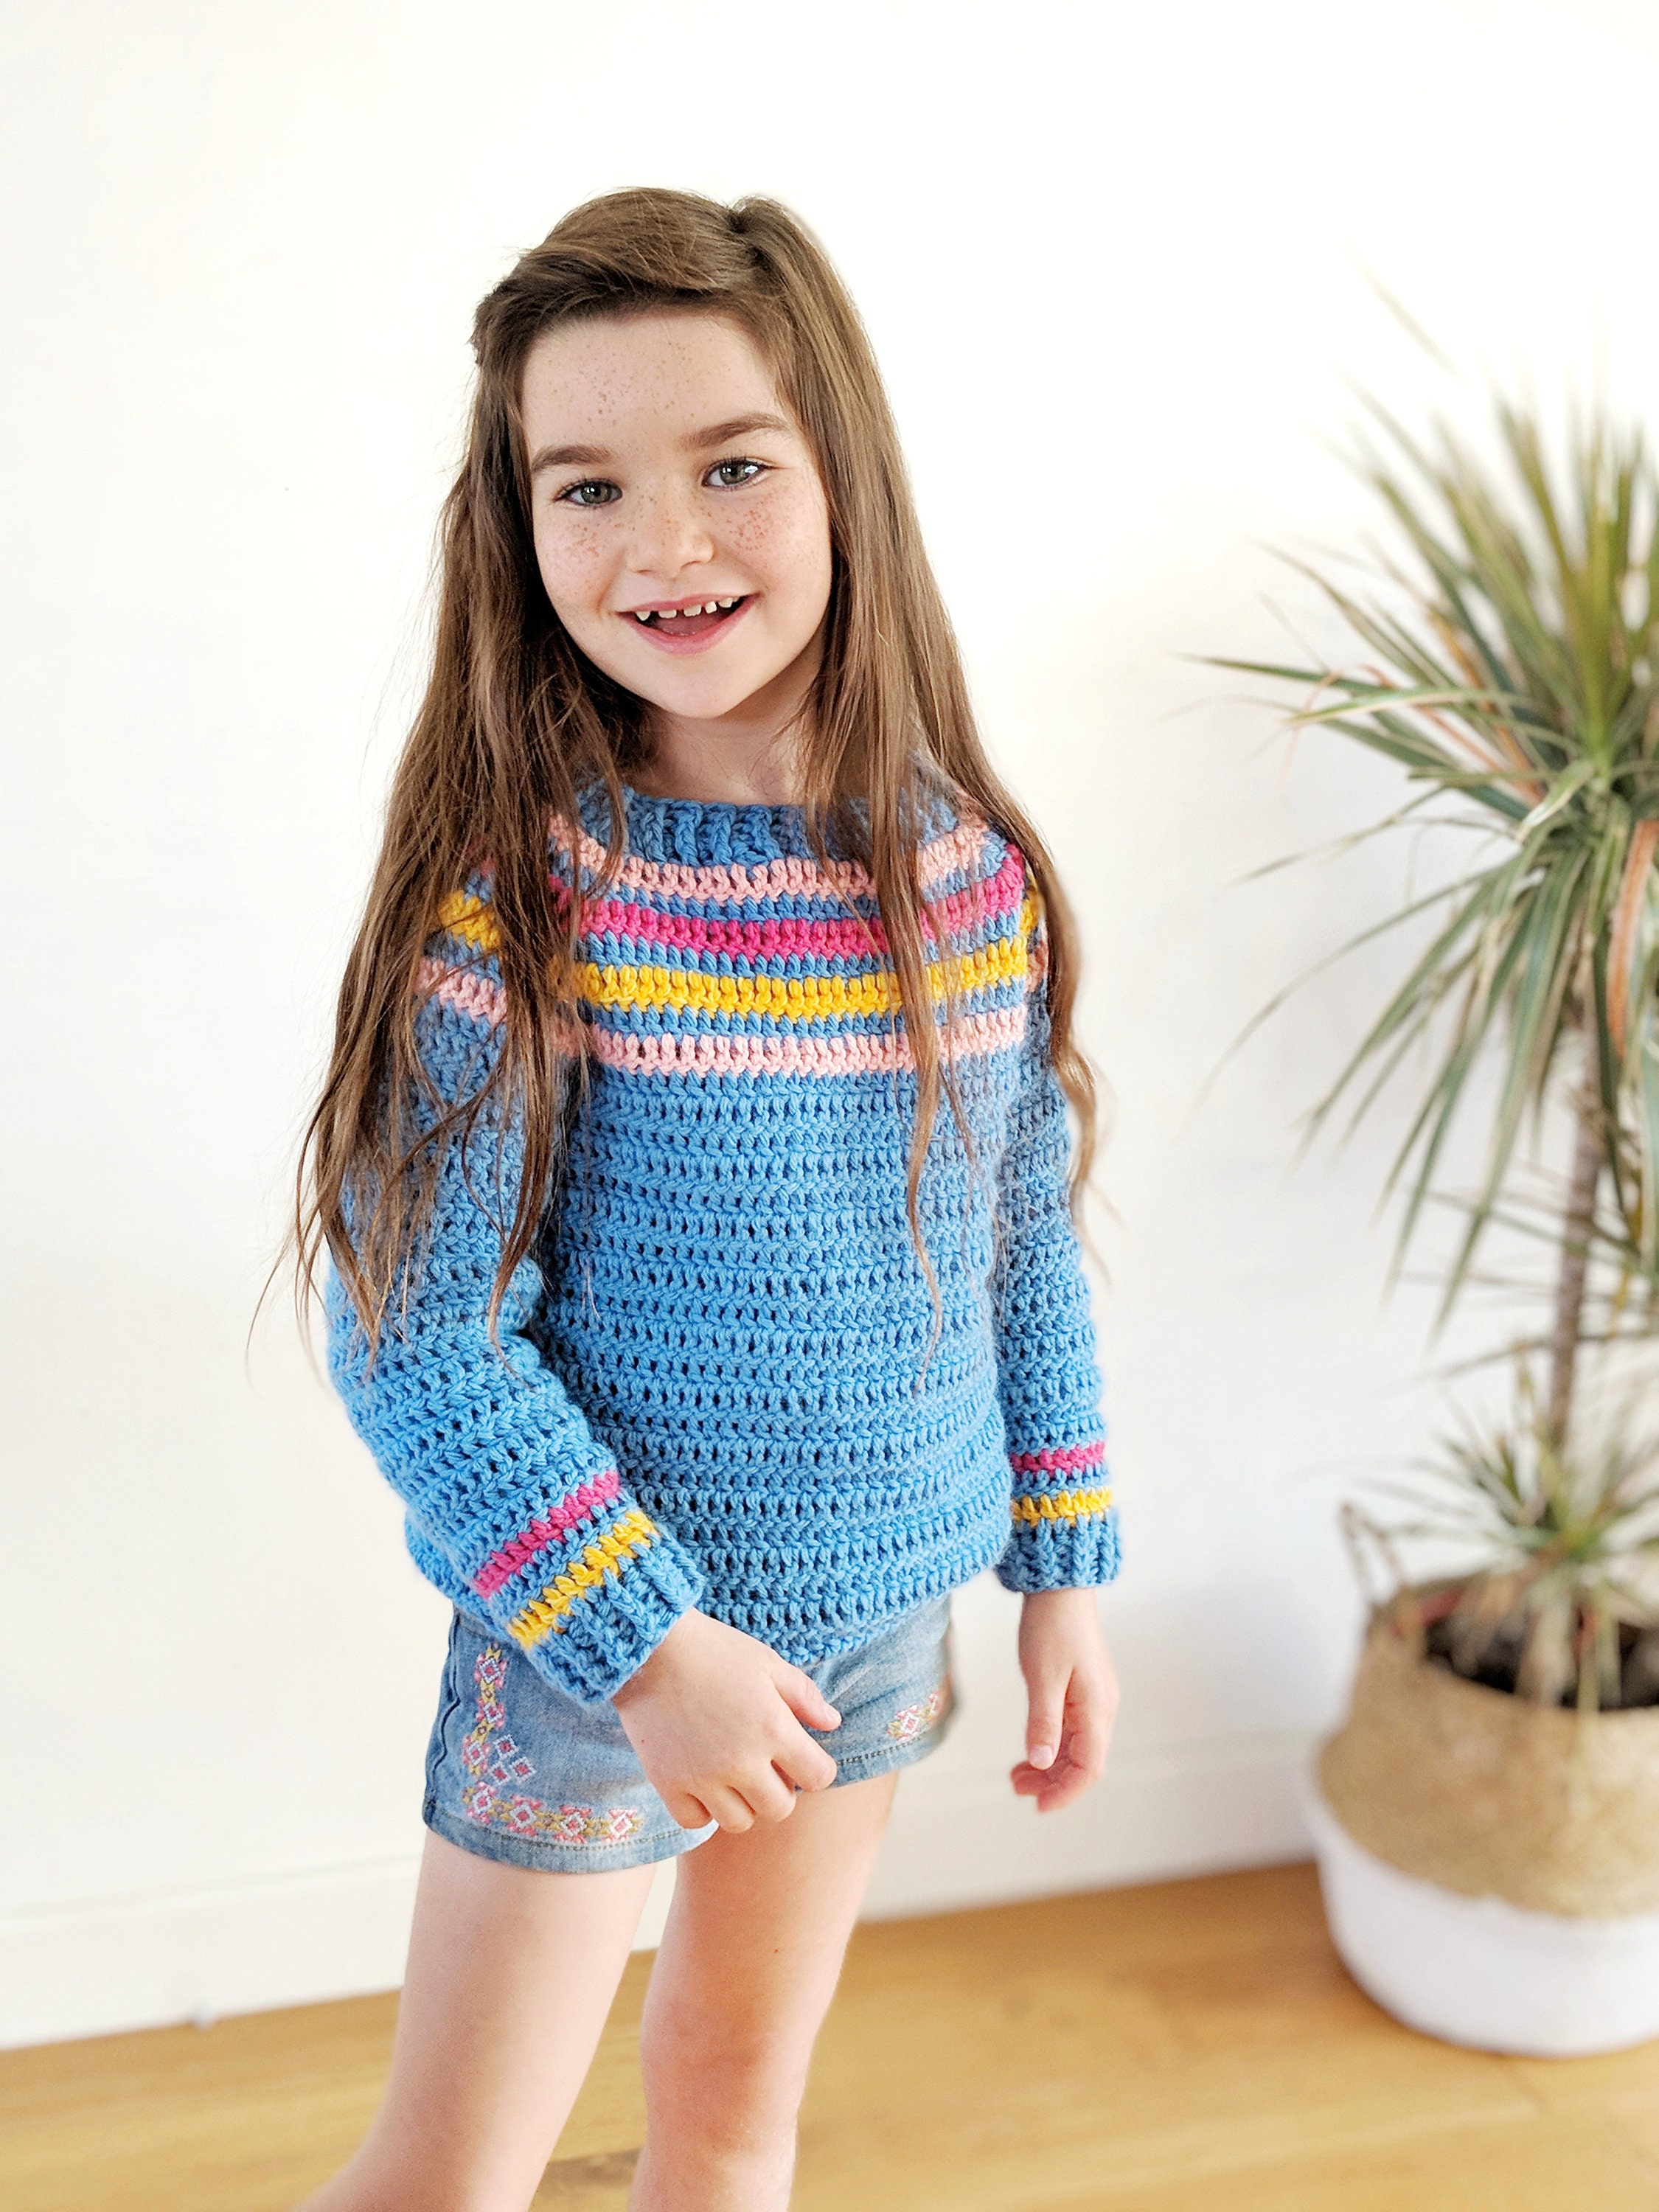 Kids Cloud Nine Jumper Crochet Pattern by Iron Lamb Digital | Etsy